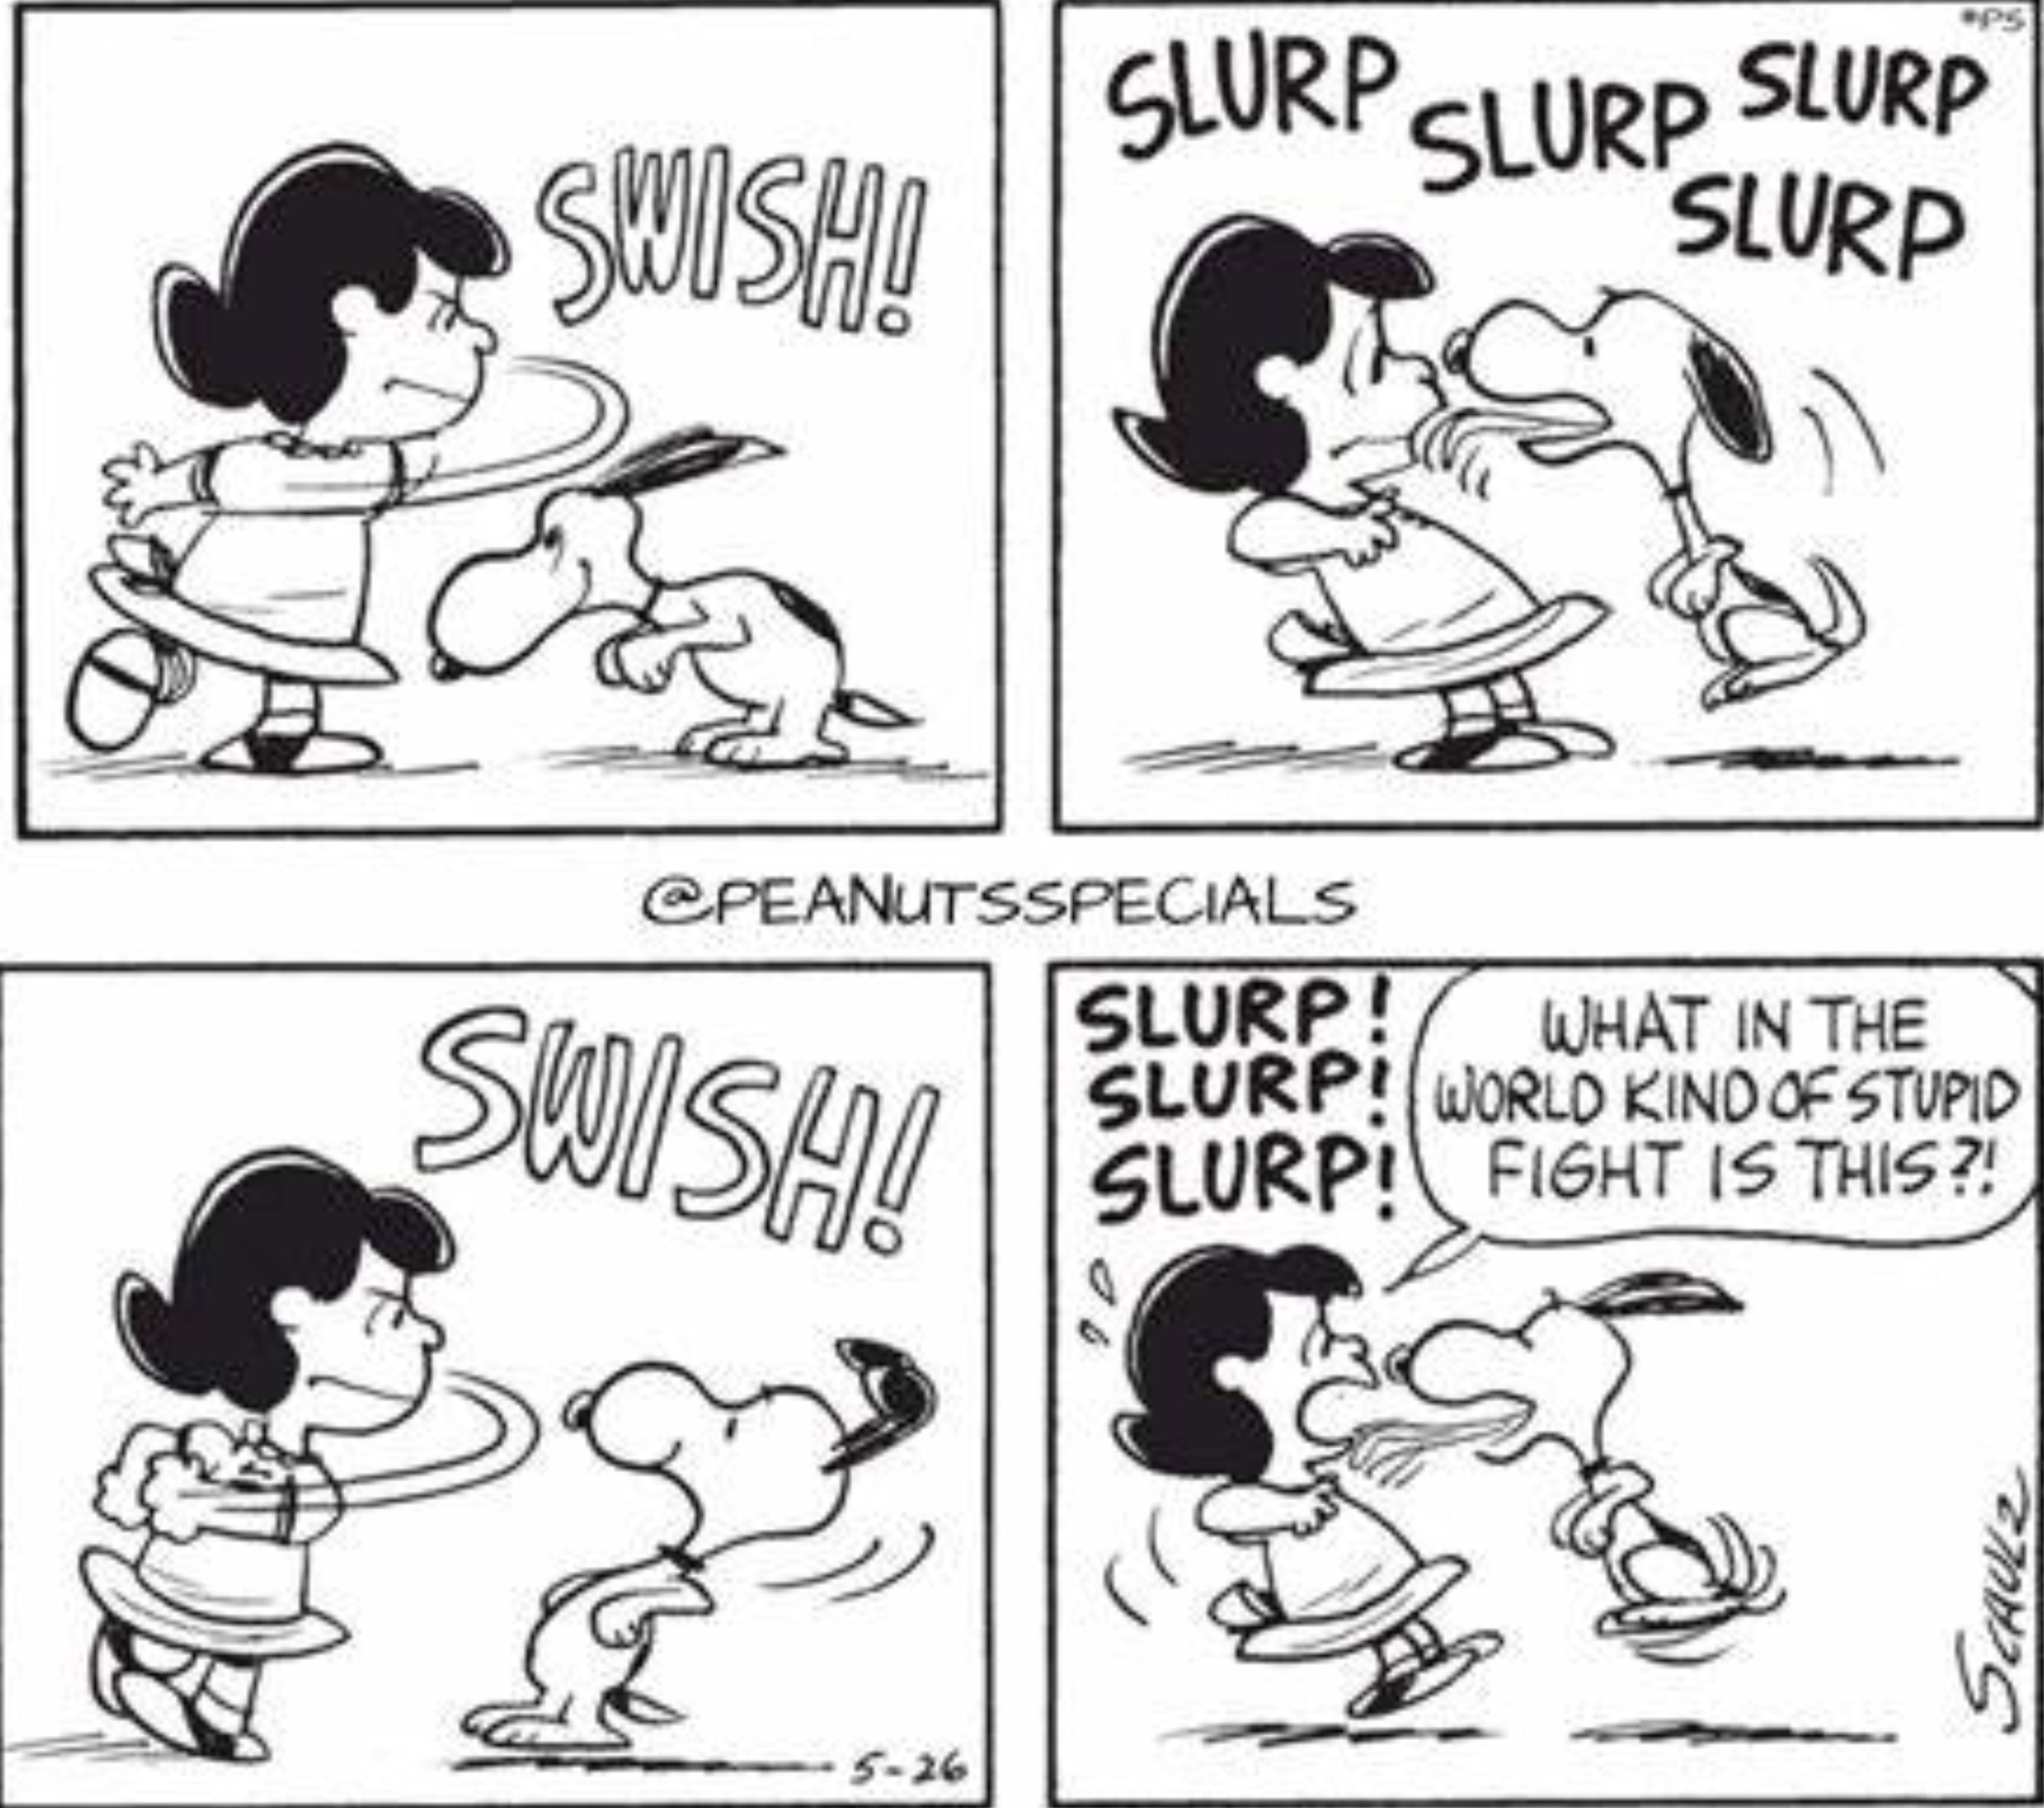 Lucy dá um soco em Snoopy, que a lambe em resposta, o que a leva a perguntar: "Que... tipo de briga estúpida é essa?"